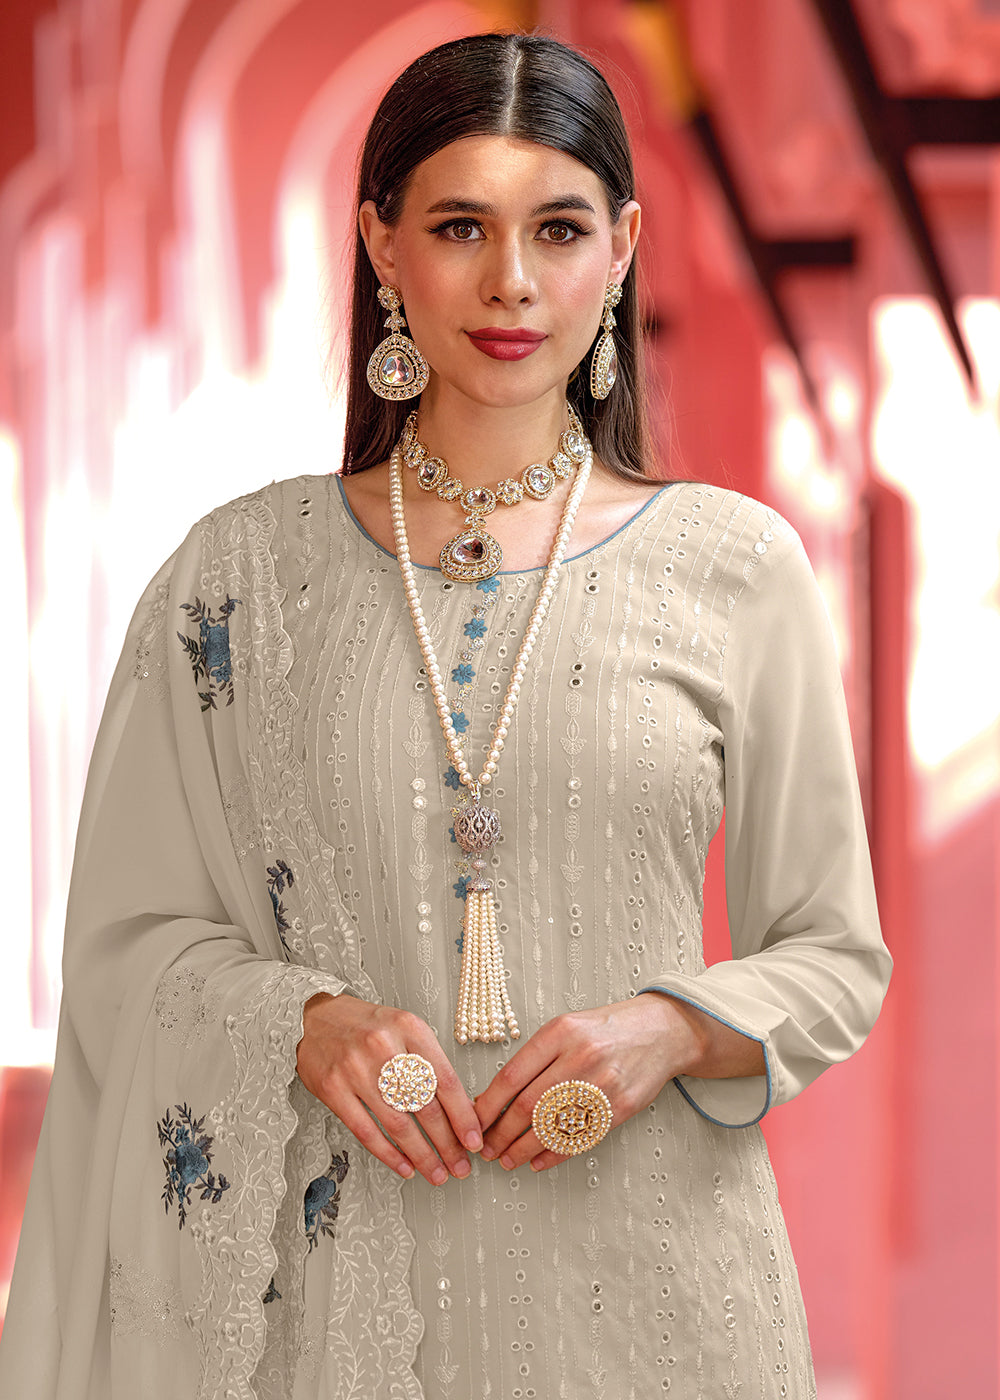 Buy Now Pakistani Style Elegant Grey Embroidered Eid Wear Kurta Set Online in USA, UK, Canada & Worldwide at Empress Clothing.